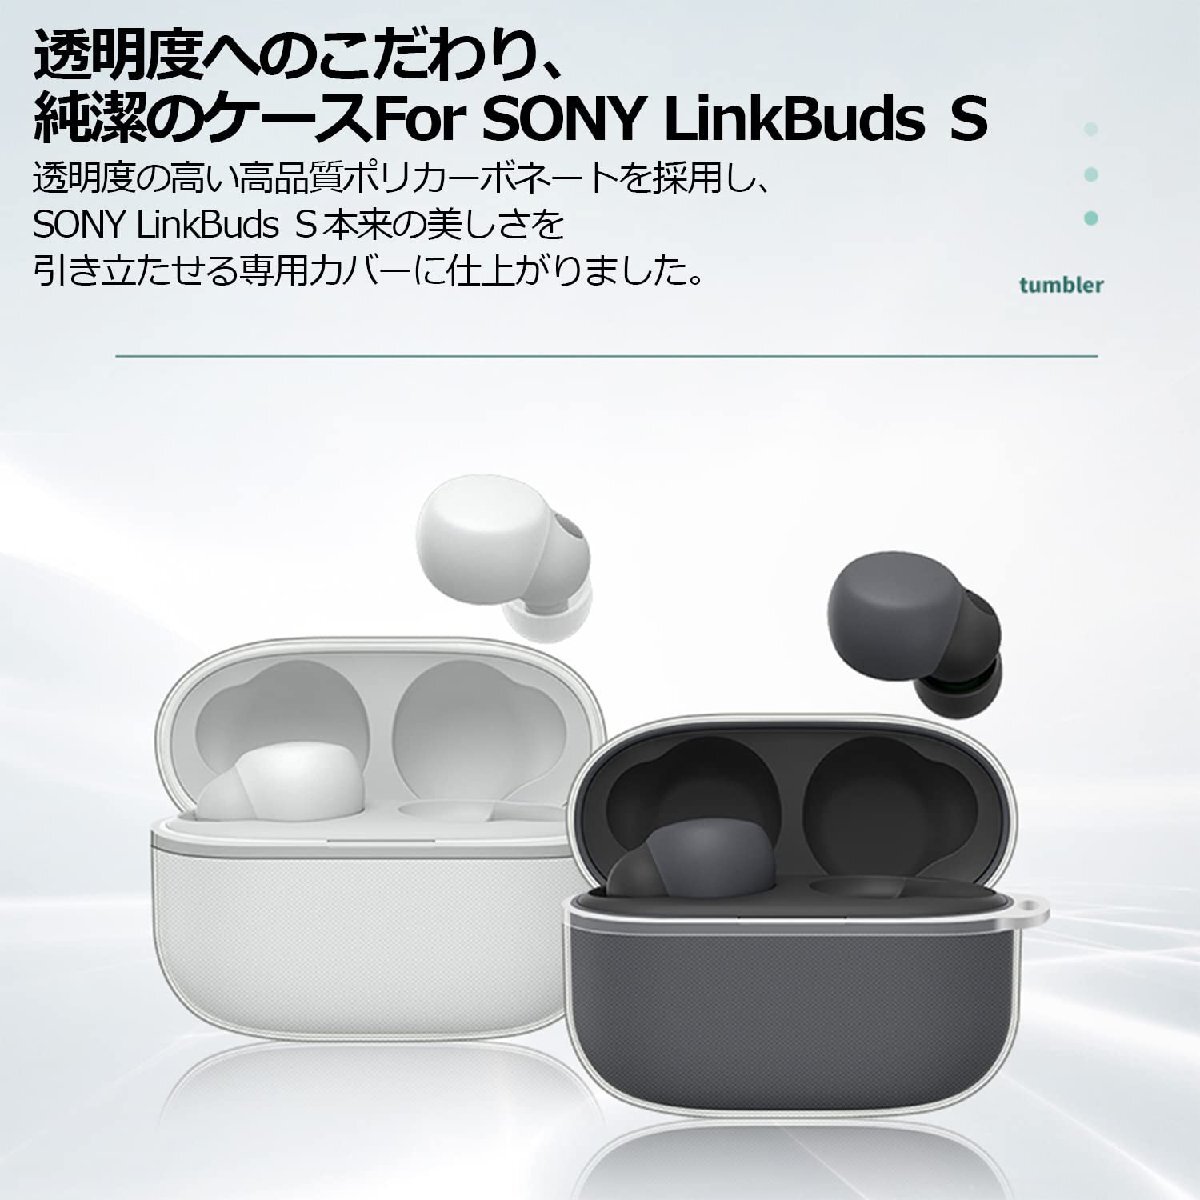 TALENANA for Sony LinkBuds S WF-LS900Nケース クリア 保護カバー TPU素材 防水 キズ防止 WF-LS900_画像7